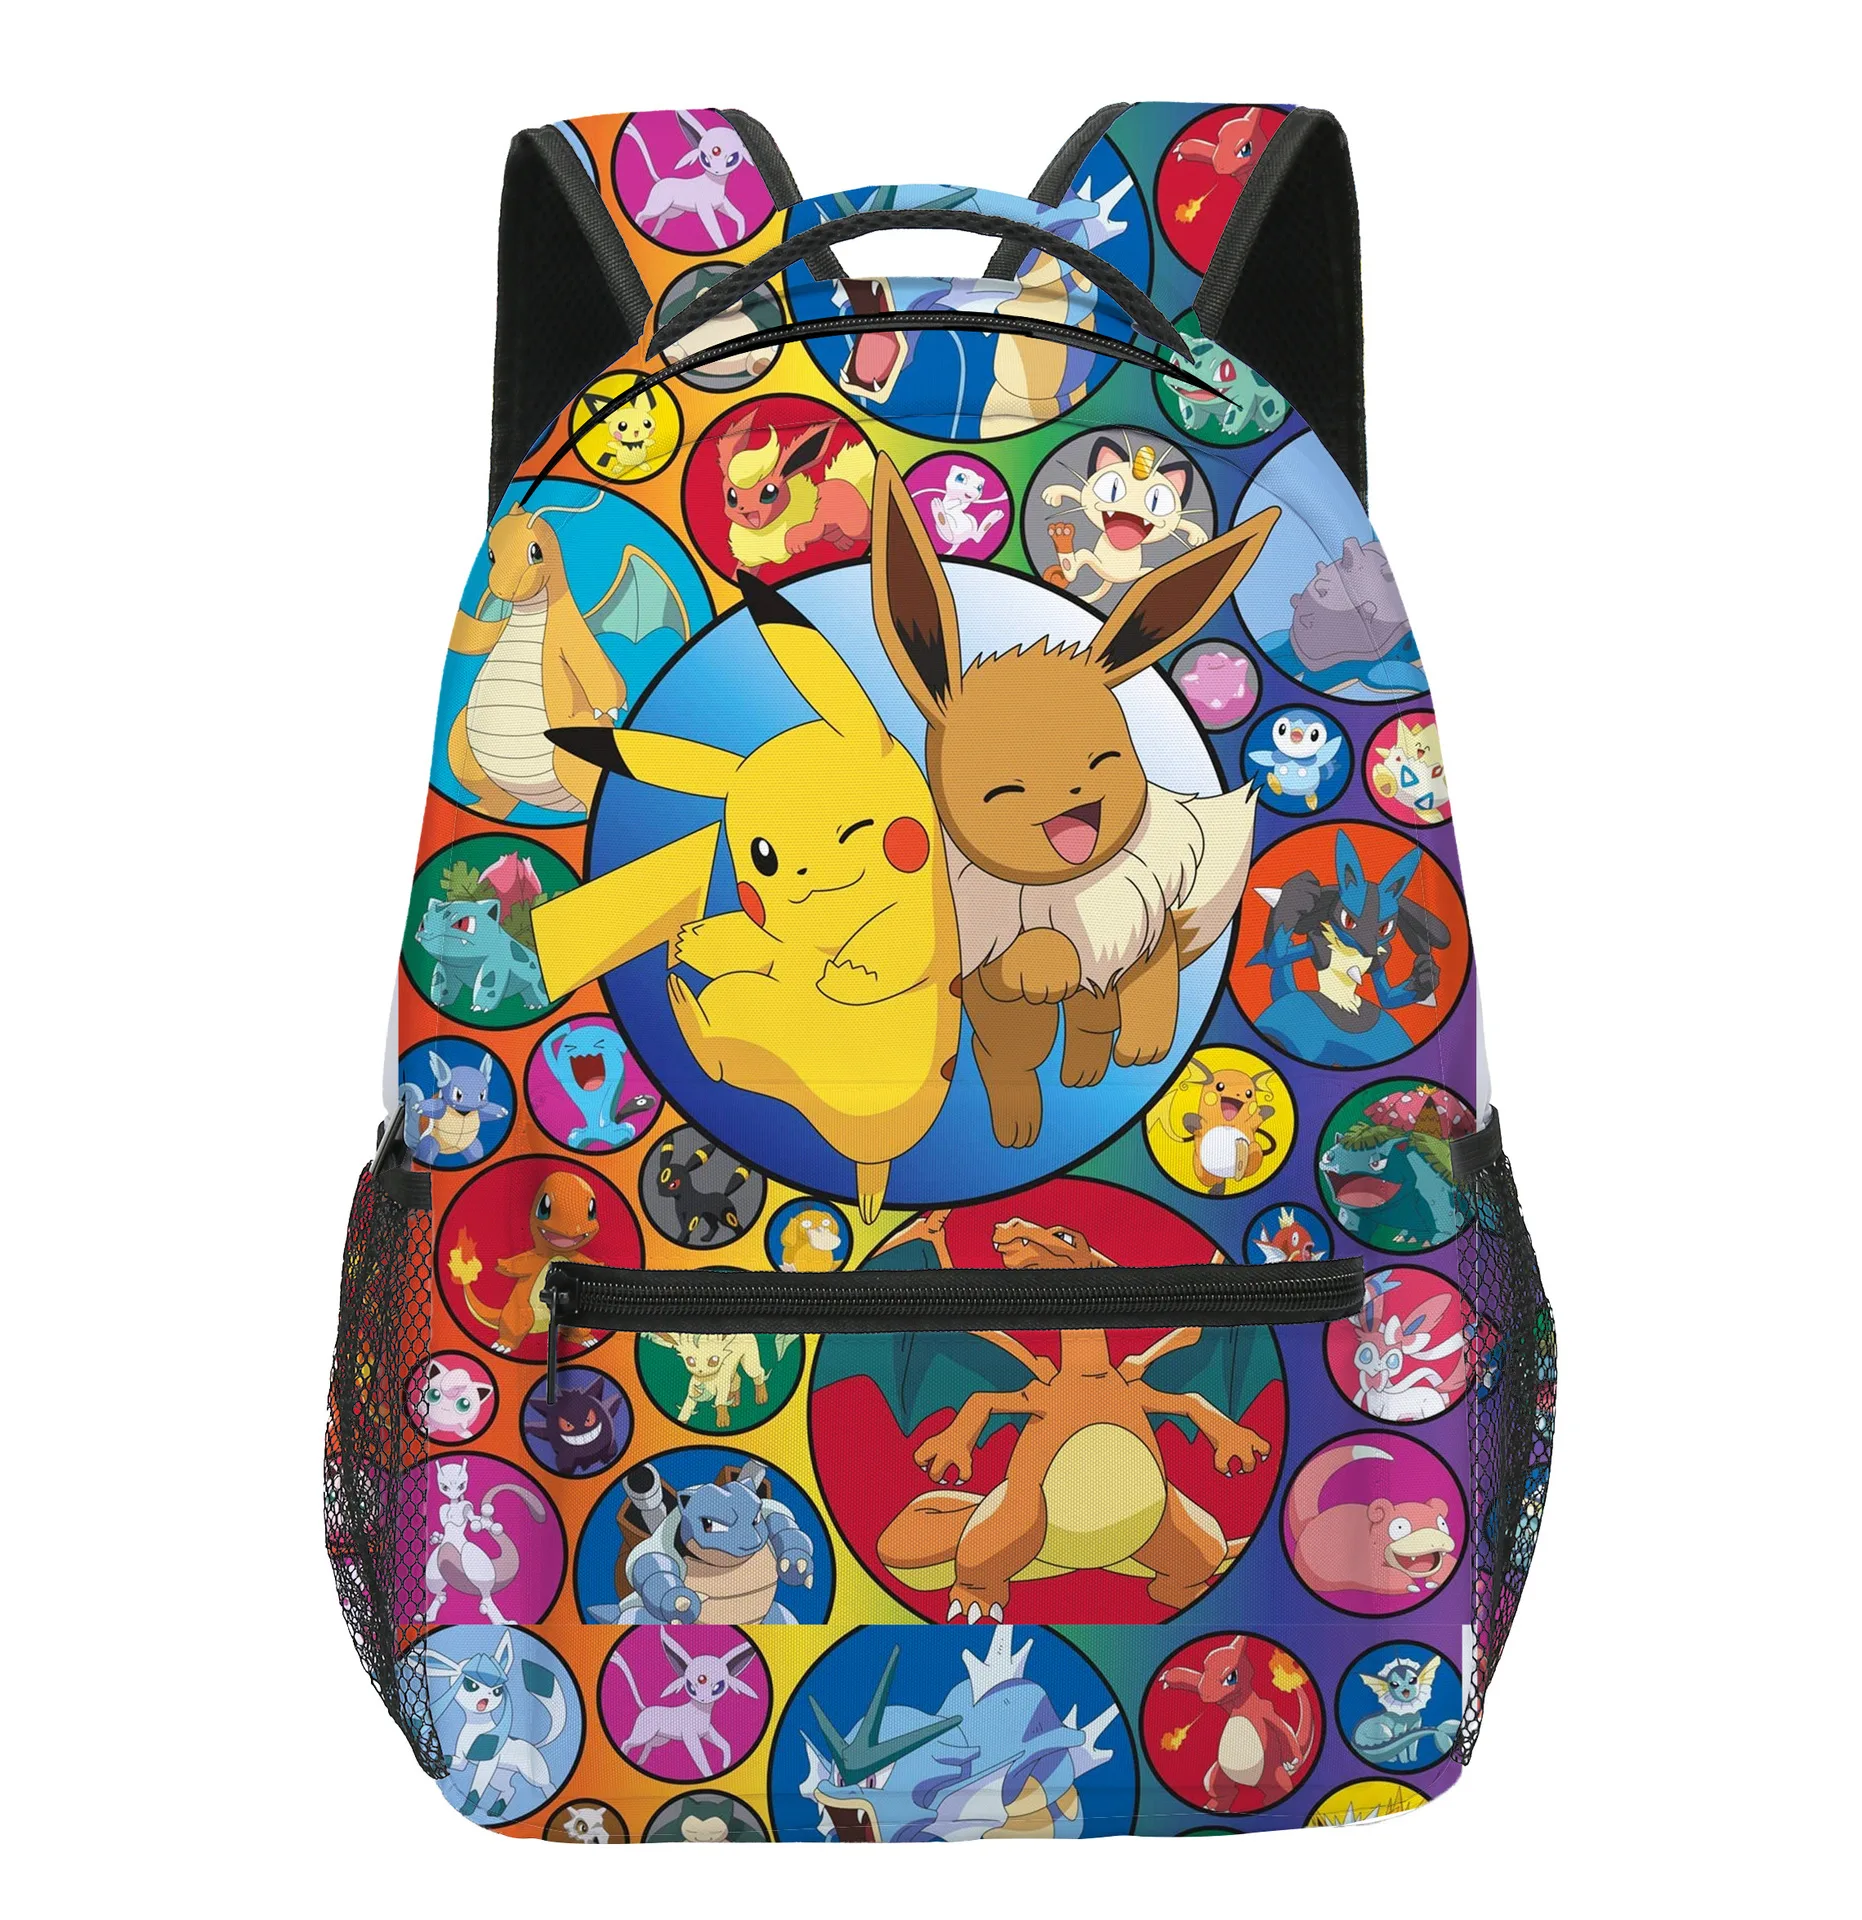 Pokemon Pikachu Kids School 3D Backpack 30cm